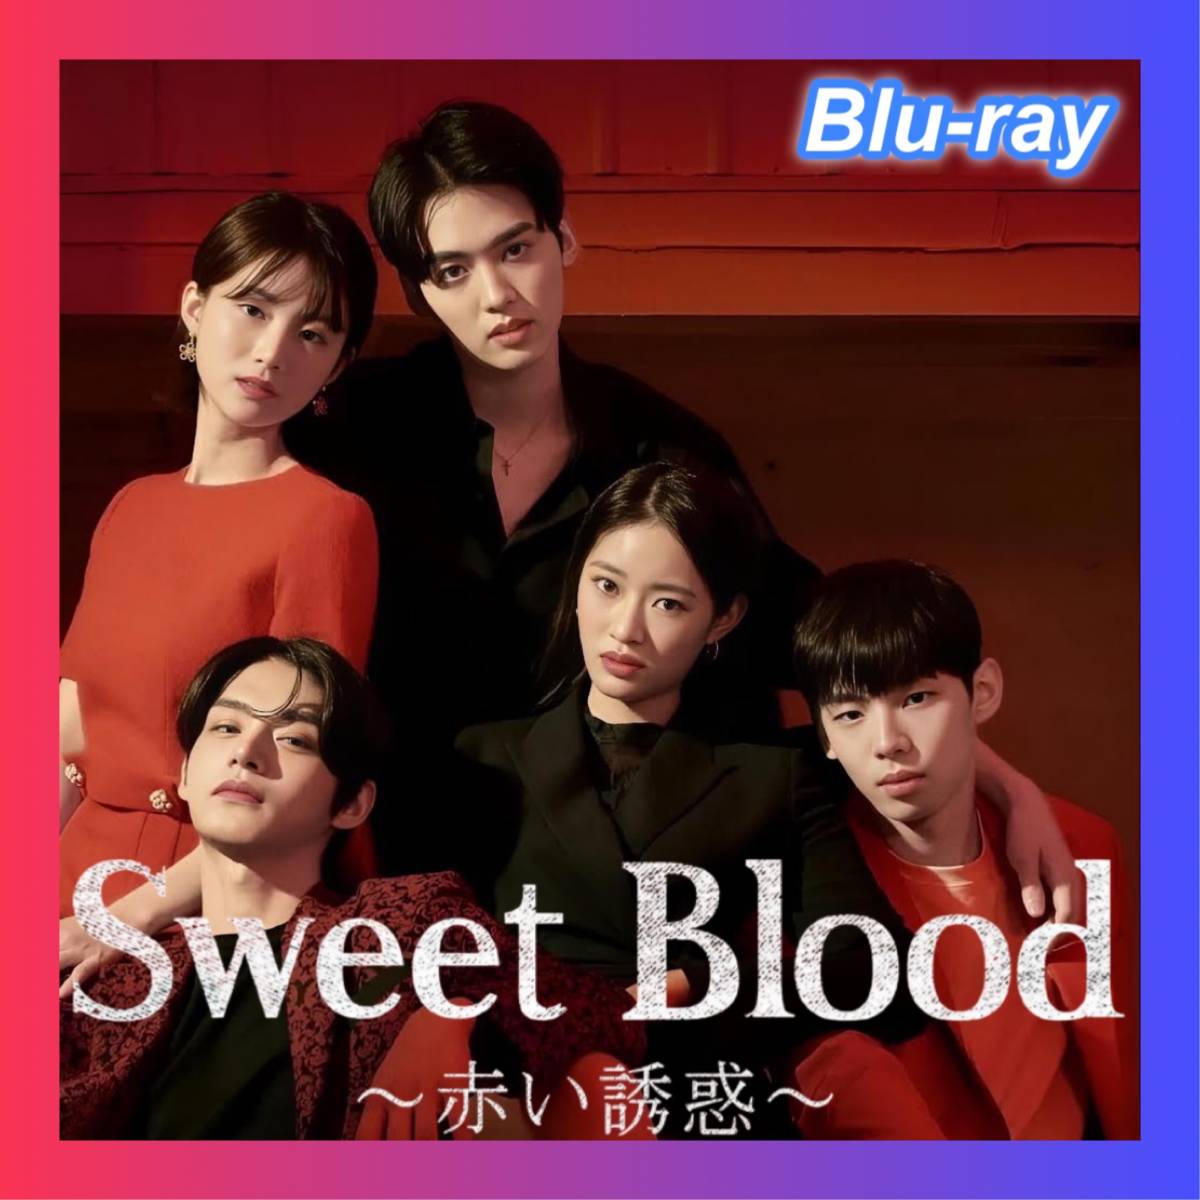 Sweet Blood ～赤い誘惑～『ヒーリング』韓国ドラマ...『Booking』ブルーレイ『Tree』●_画像1